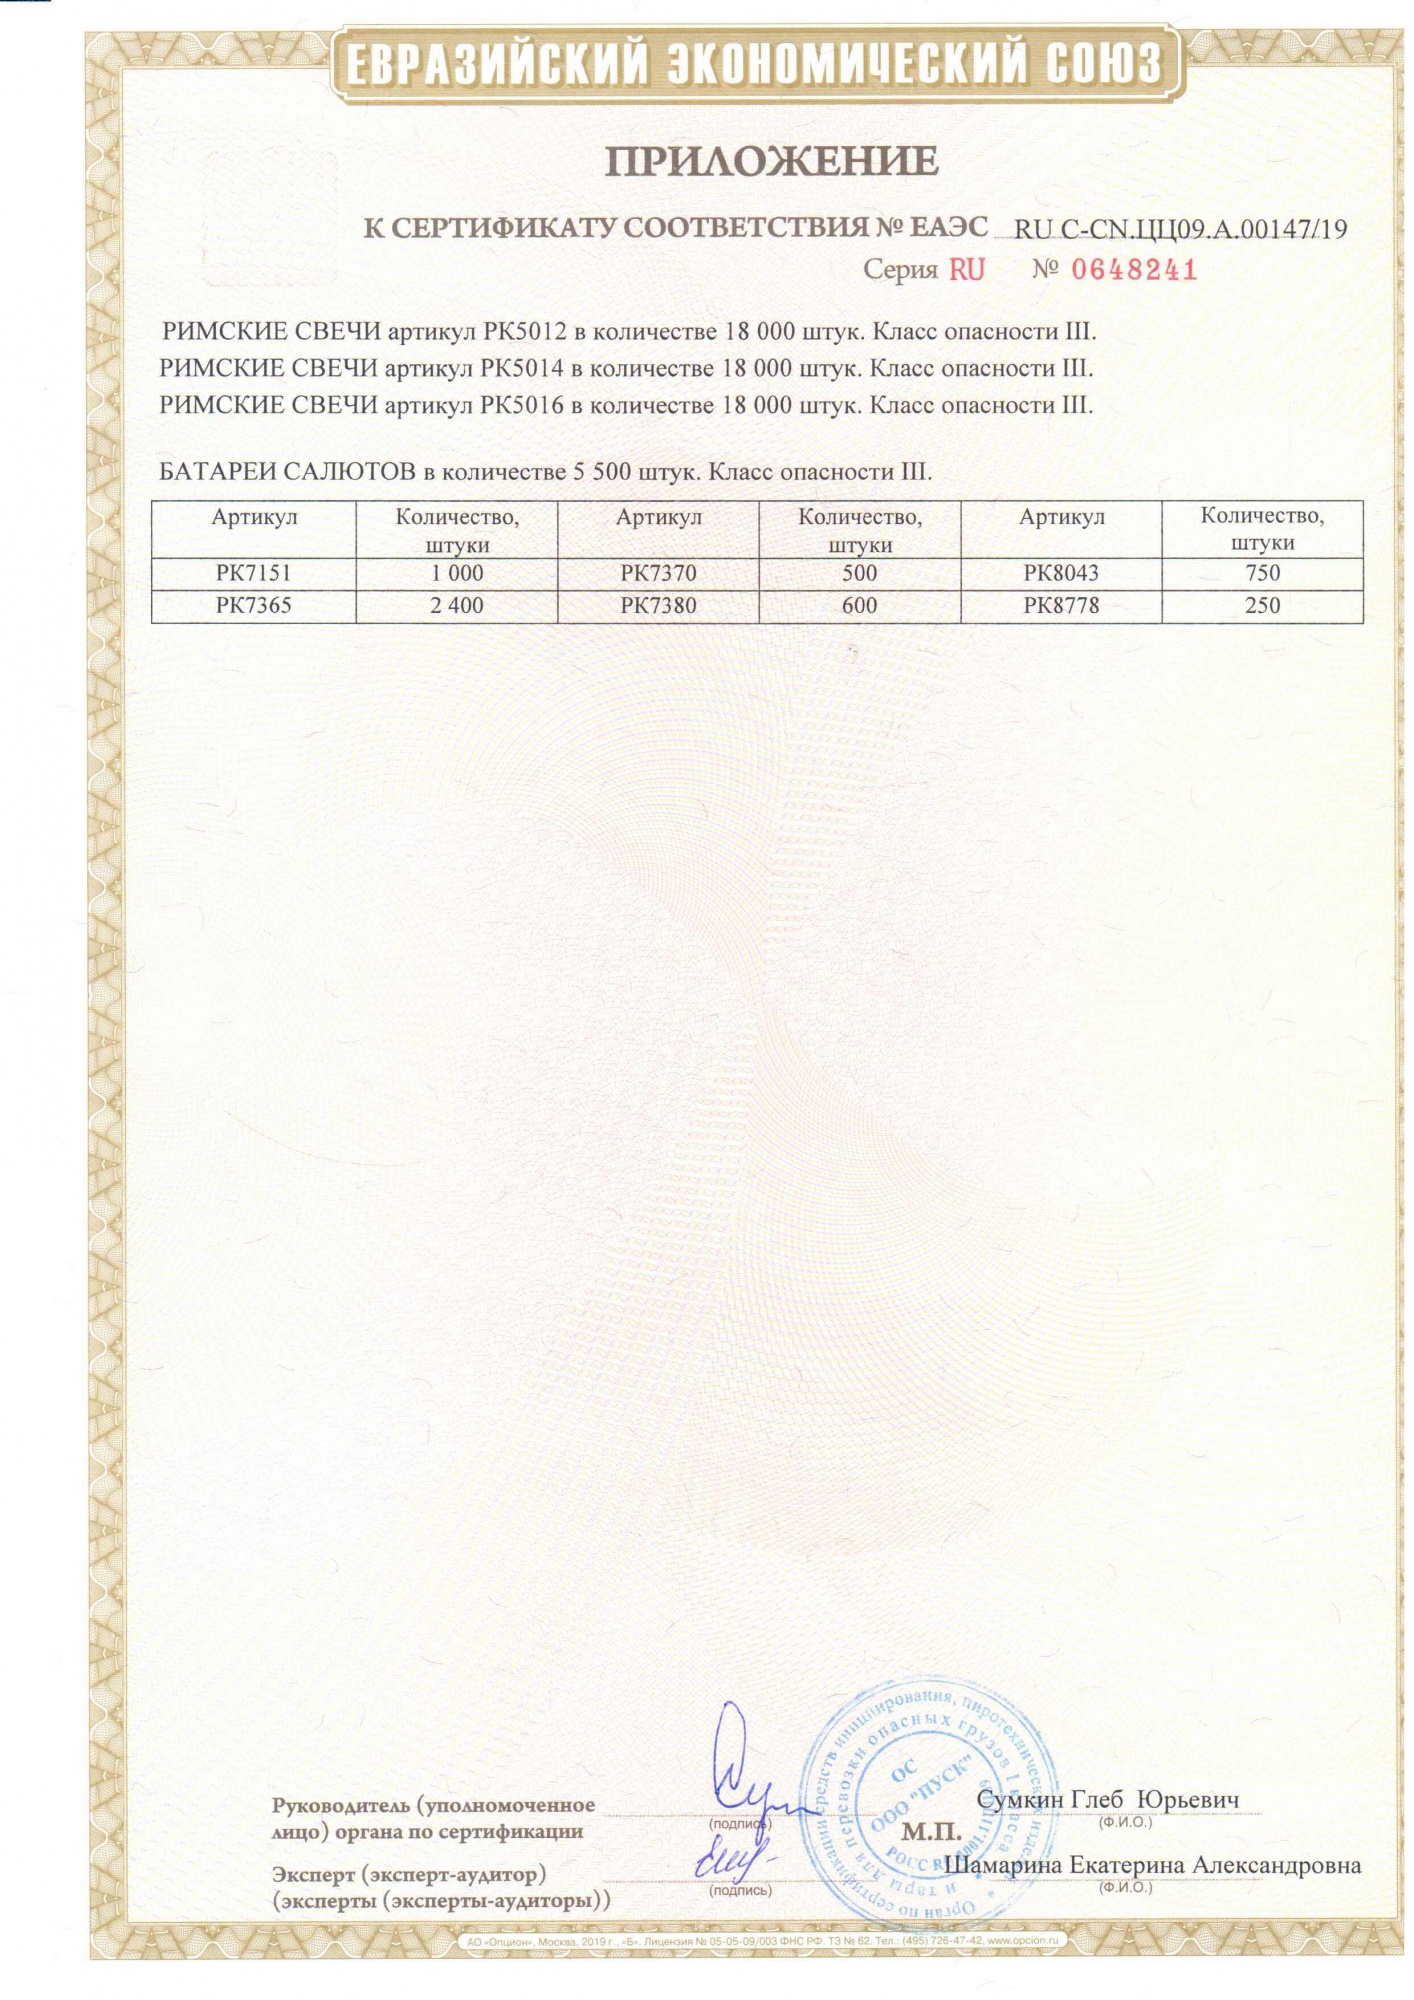 Приложение к сертификату Первачок 1,0"/1,25" х 72 (арт. РК8043)